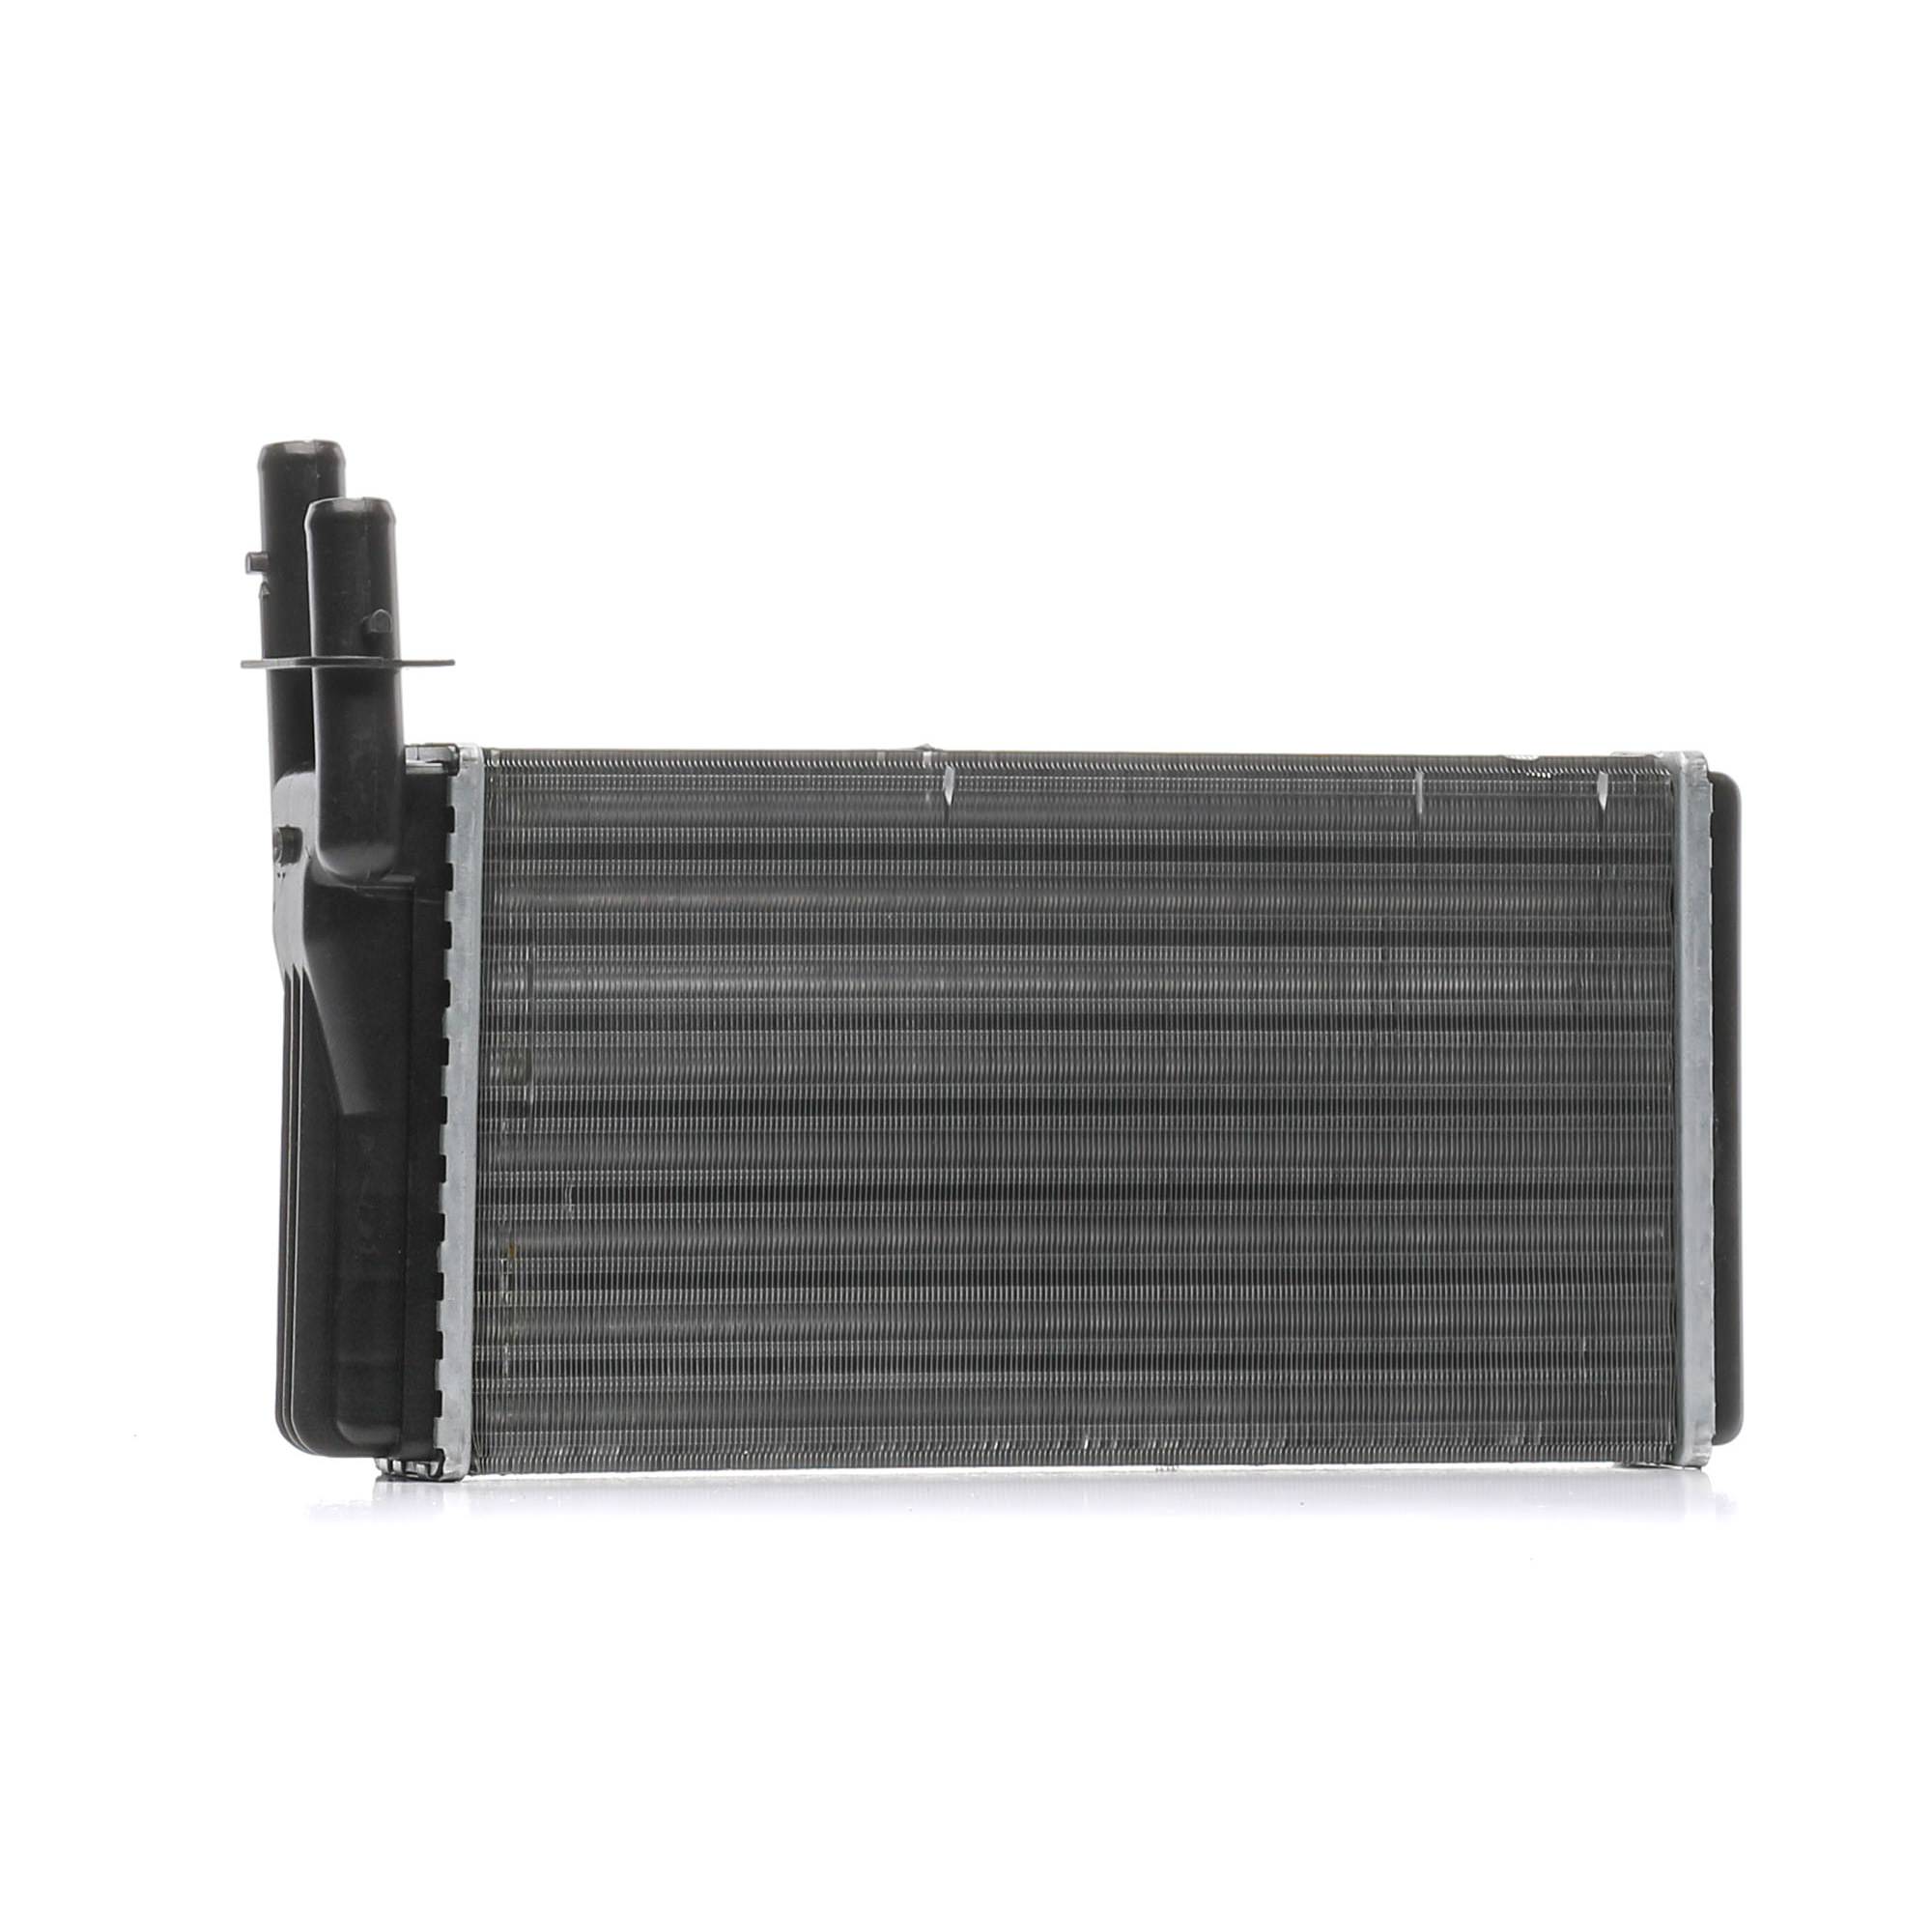 RIDEX 467H0018 Heater matrix Core Dimensions: 280 x 157 x 42 mm